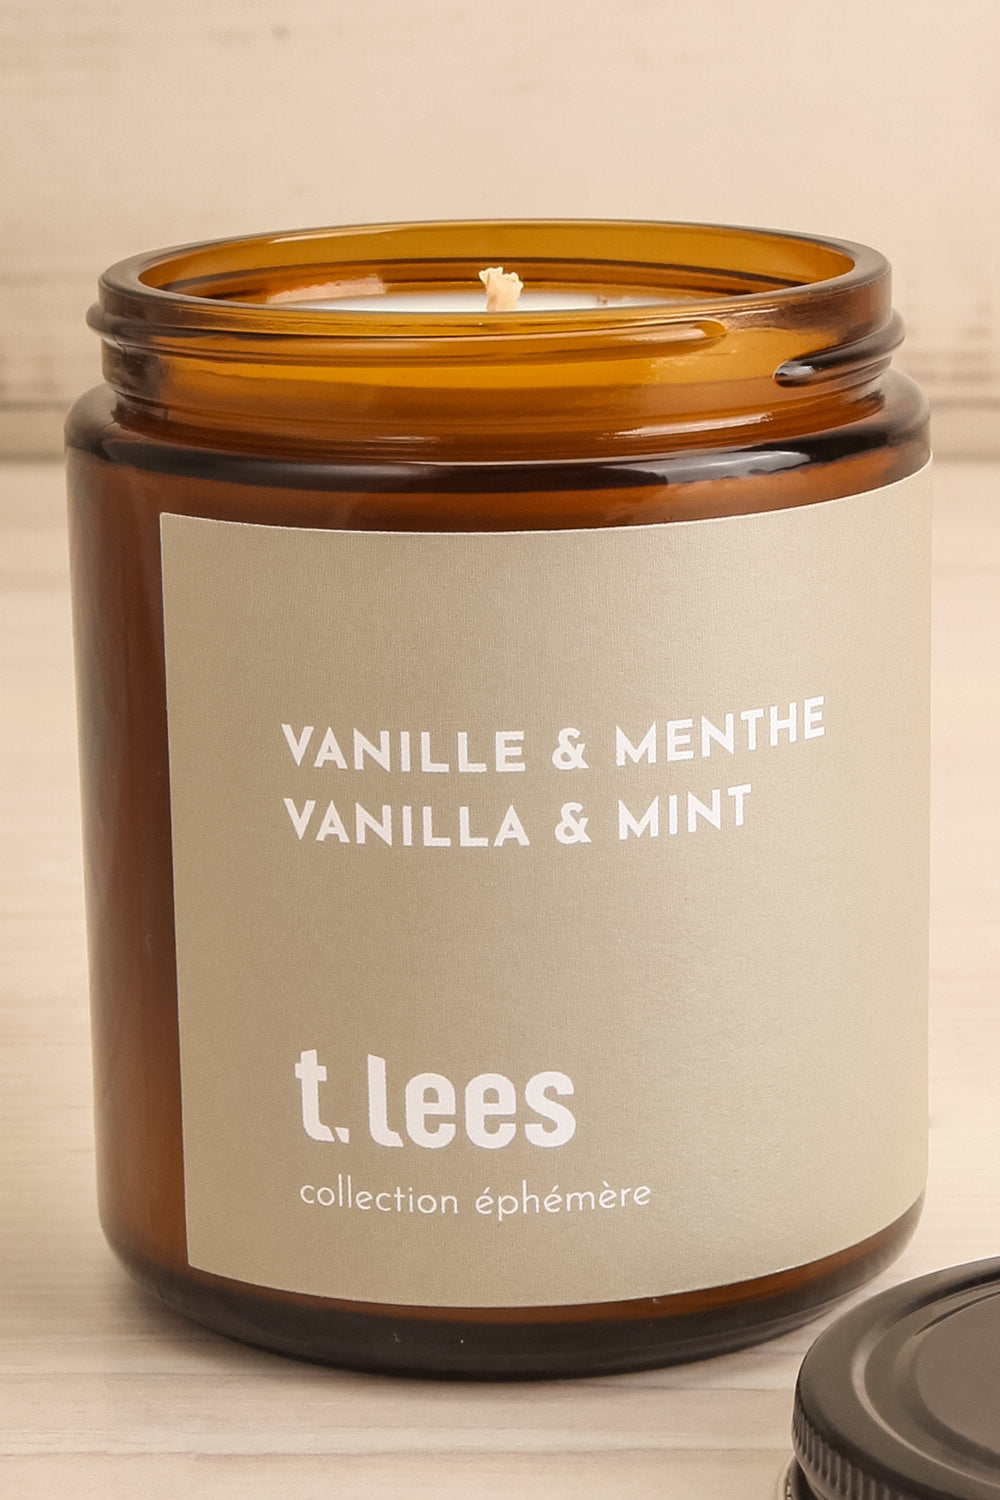 Vanilla & Mint Candle | Maison garçonne open close-up